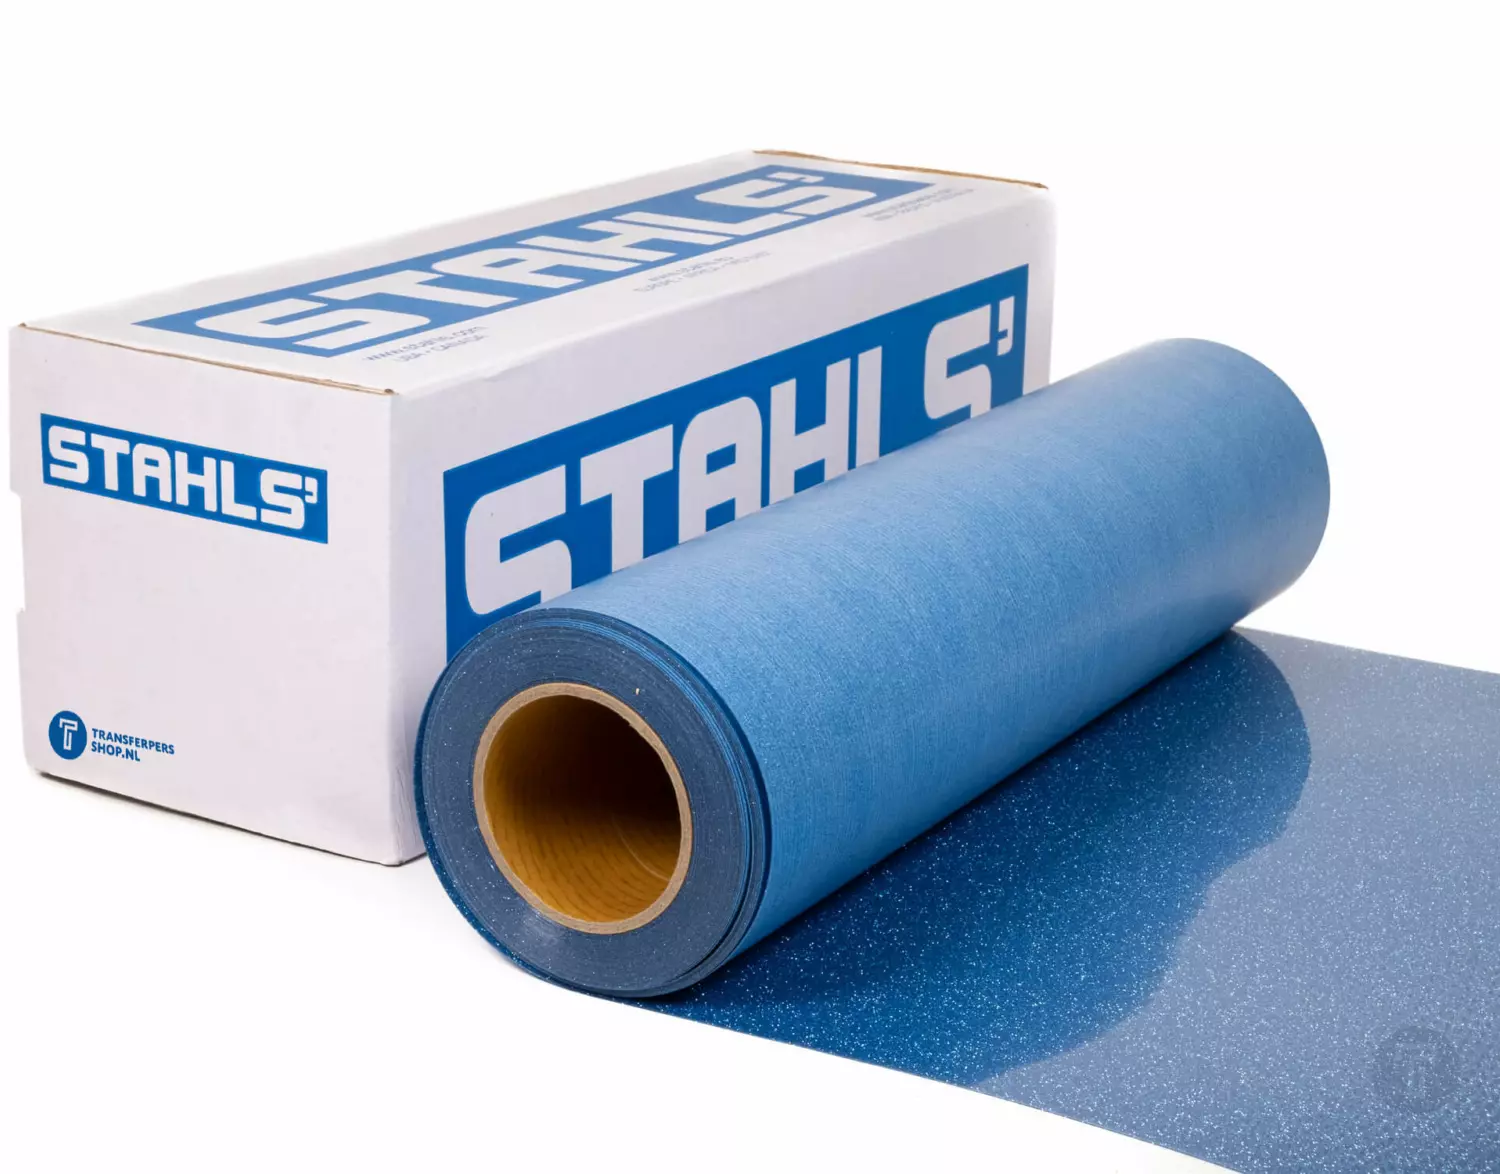 Stahls cad cut glitter 950 light blue flexfolie detail